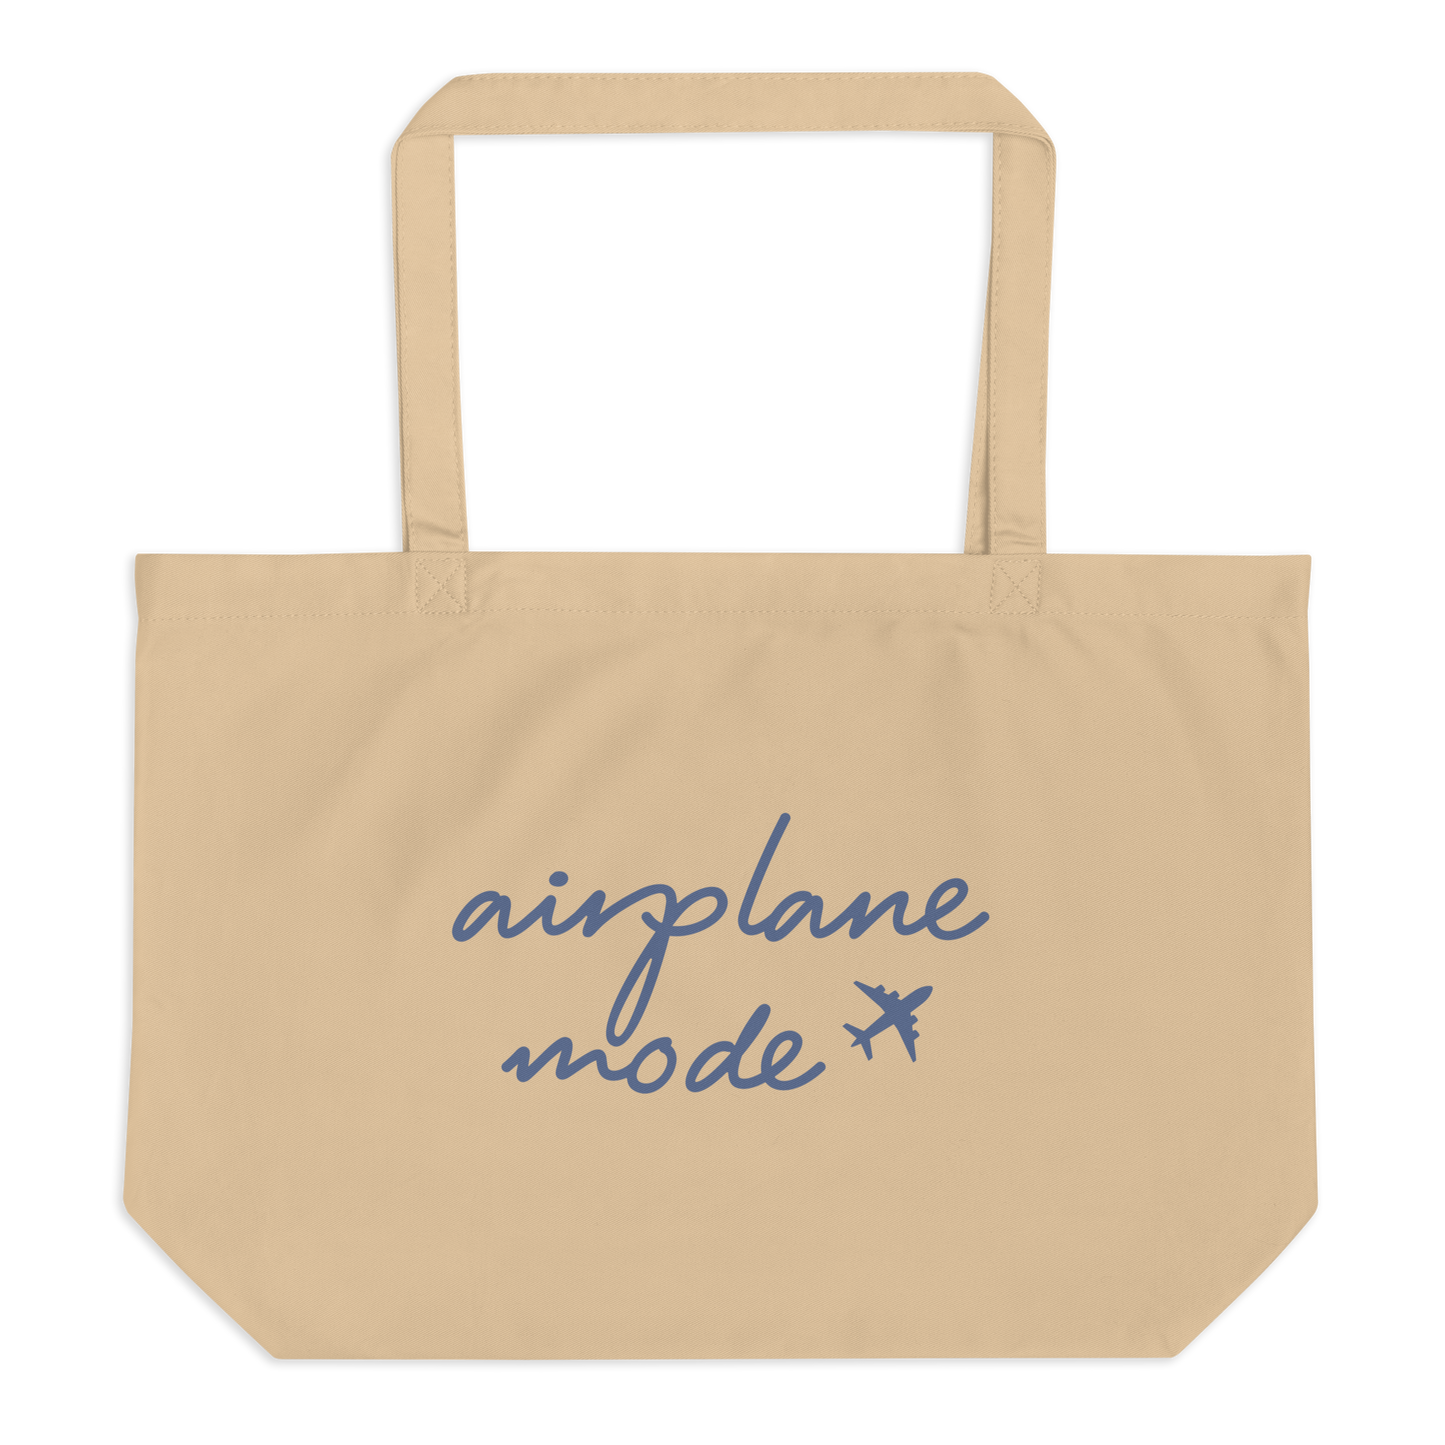 Airplane Mode Tote Bag